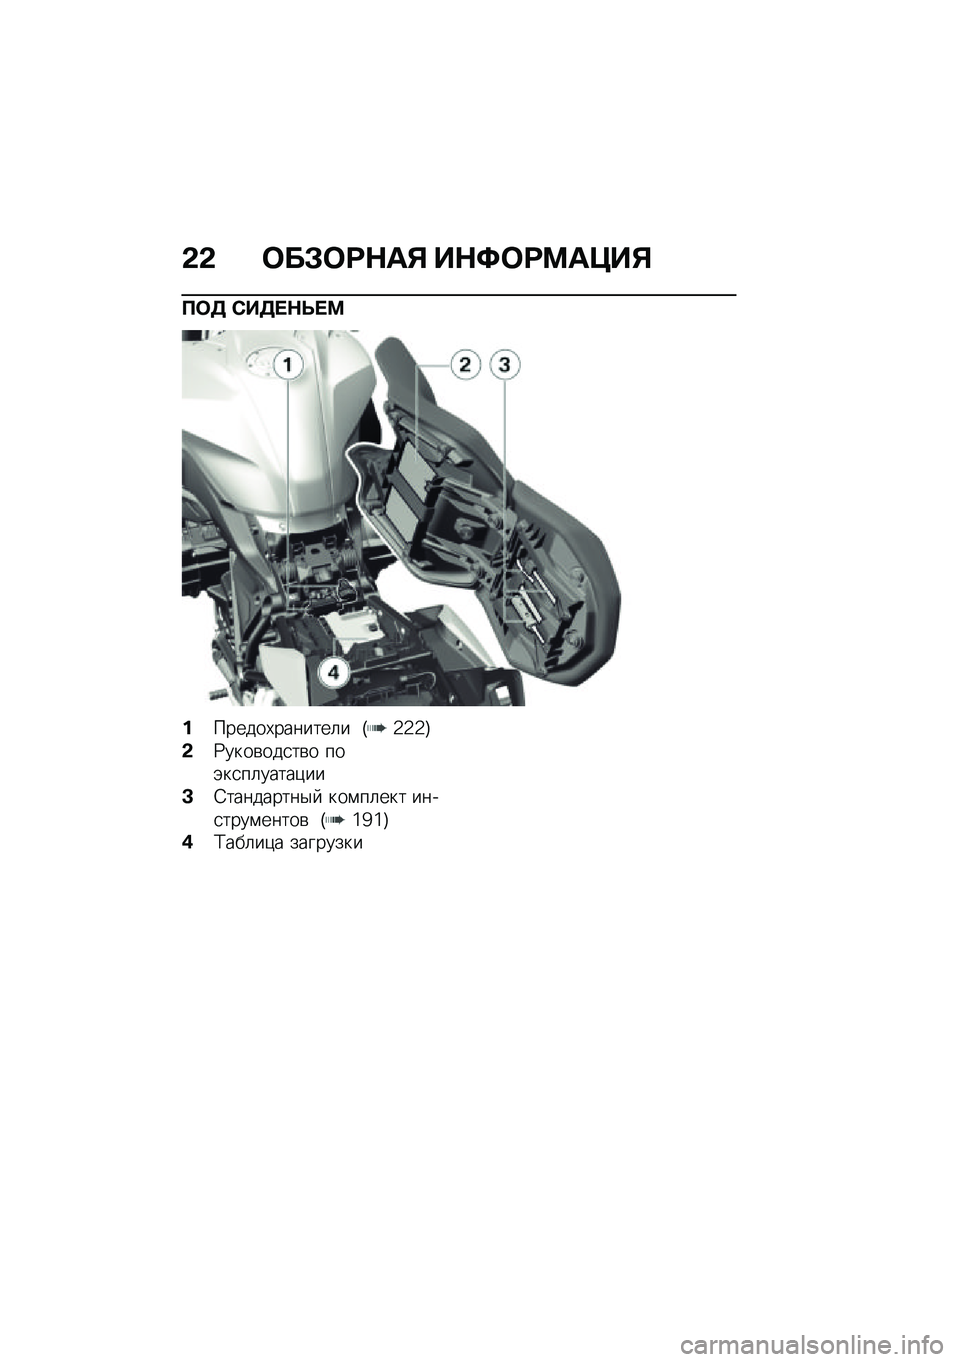 BMW MOTORRAD R 1250 RS 2020  Руководство по эксплуатации (in Russian) �&�& �	��#�	�=�$��% ��$�>�	�=�?��@��%
�B�	�5 �*��5� �$�O� �?
�������,�������	� �H�`�`�`�I
�&�:����\b���
��\b� ���(��
��	�����)��
�<�6���������$�  ���\f��